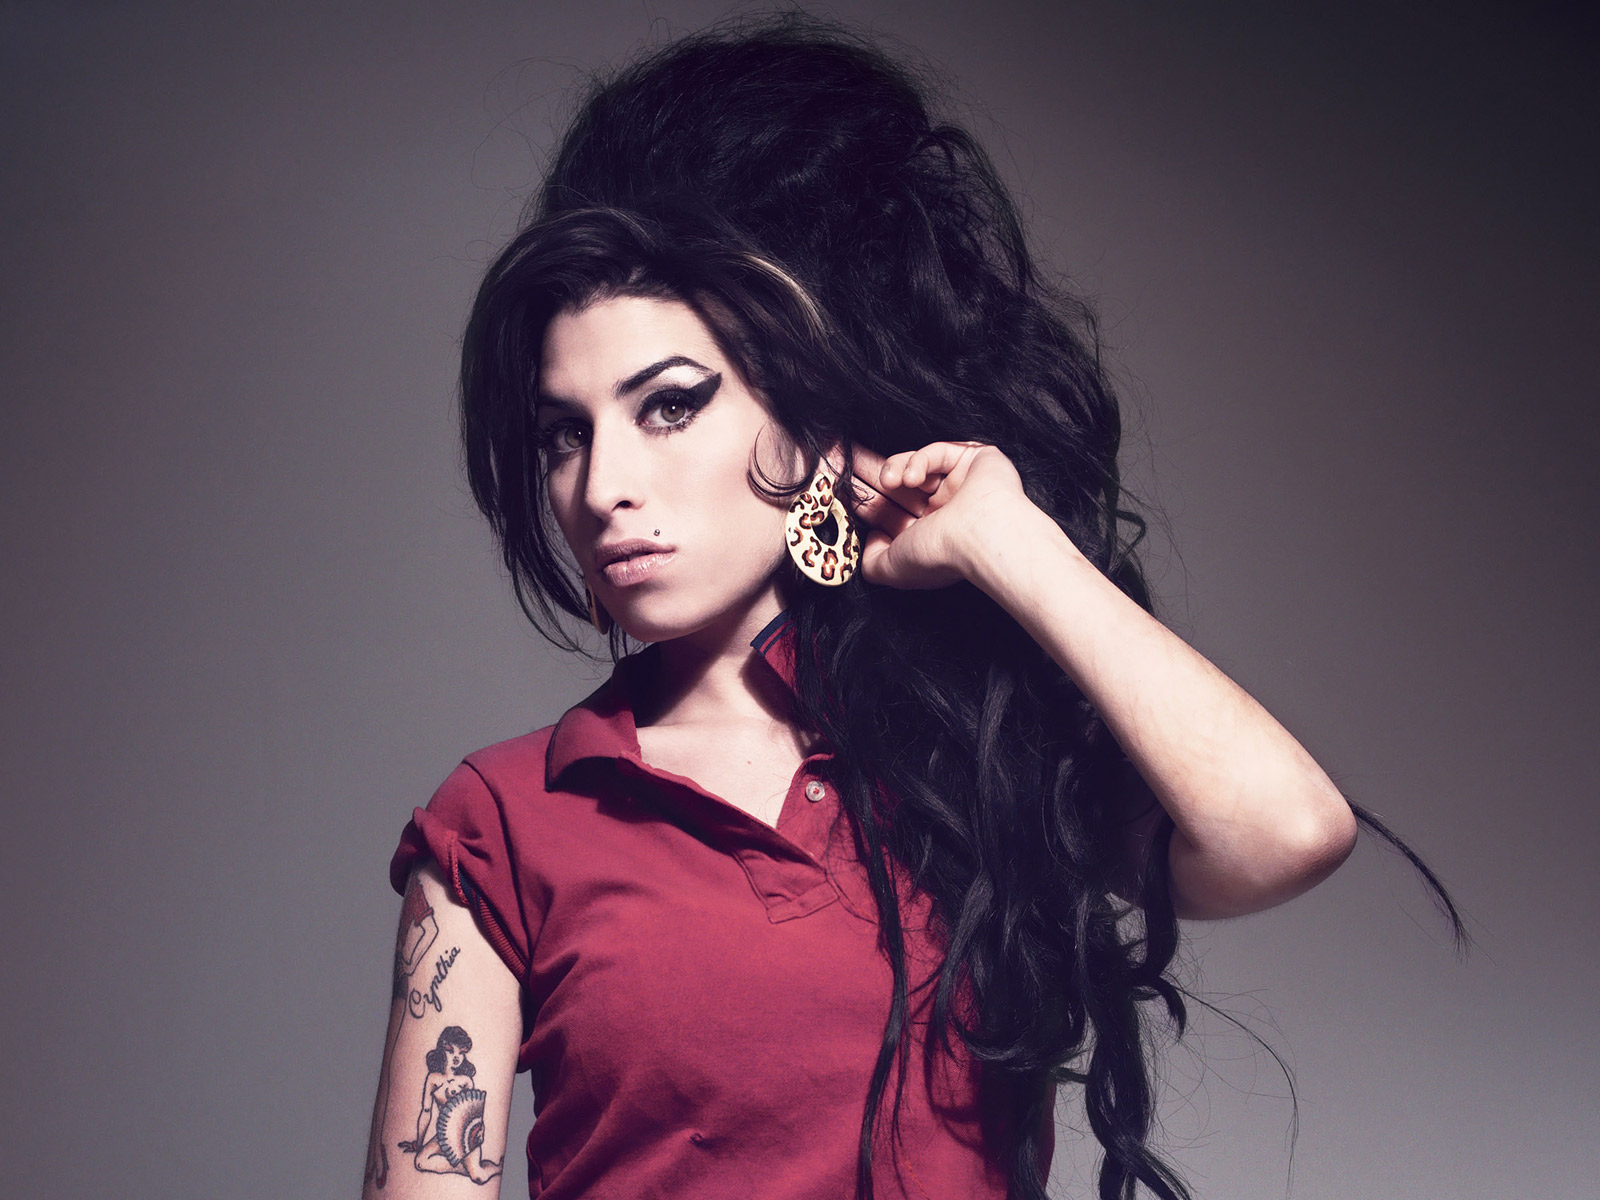 Meglepő titkot hozott nyilvánosságra Amy Winehouse-ról az énekesnő exférje